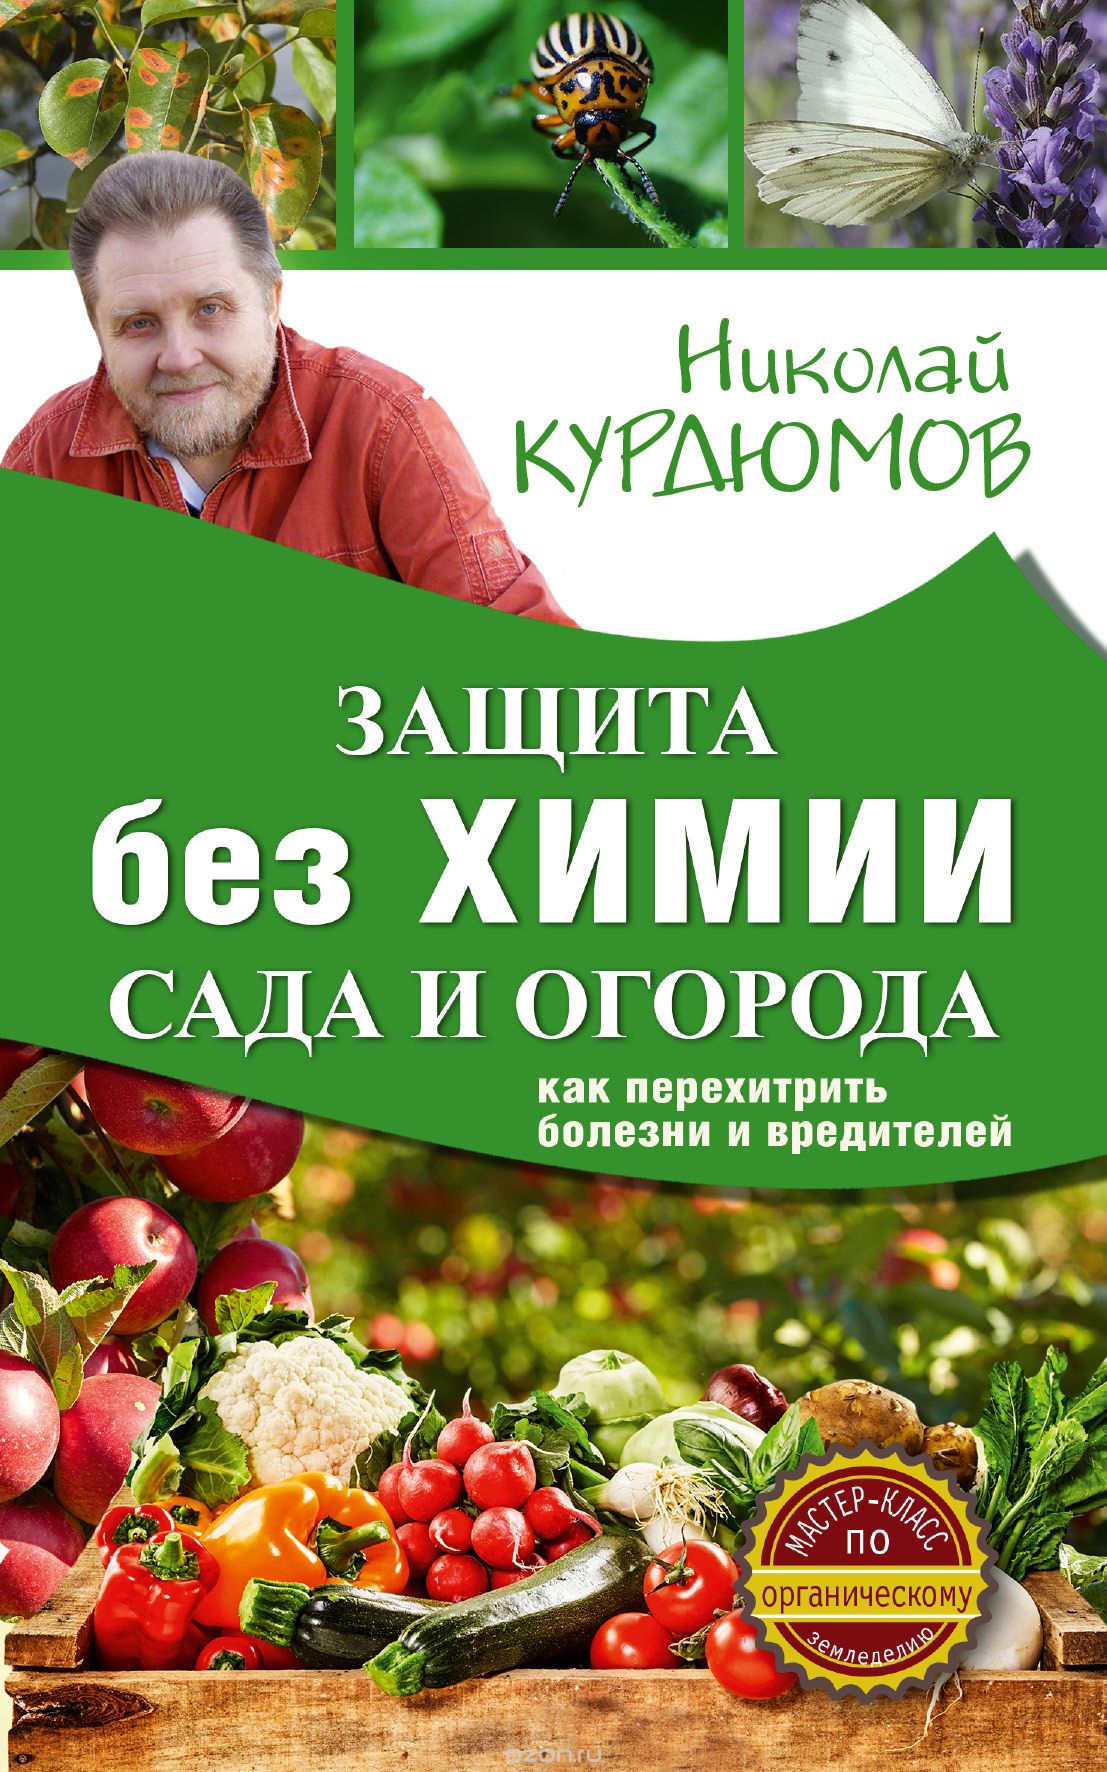 Защита сада и огорода без химии. Как перехитрить болезни и вредителей, Курдюмов Николай Иванович